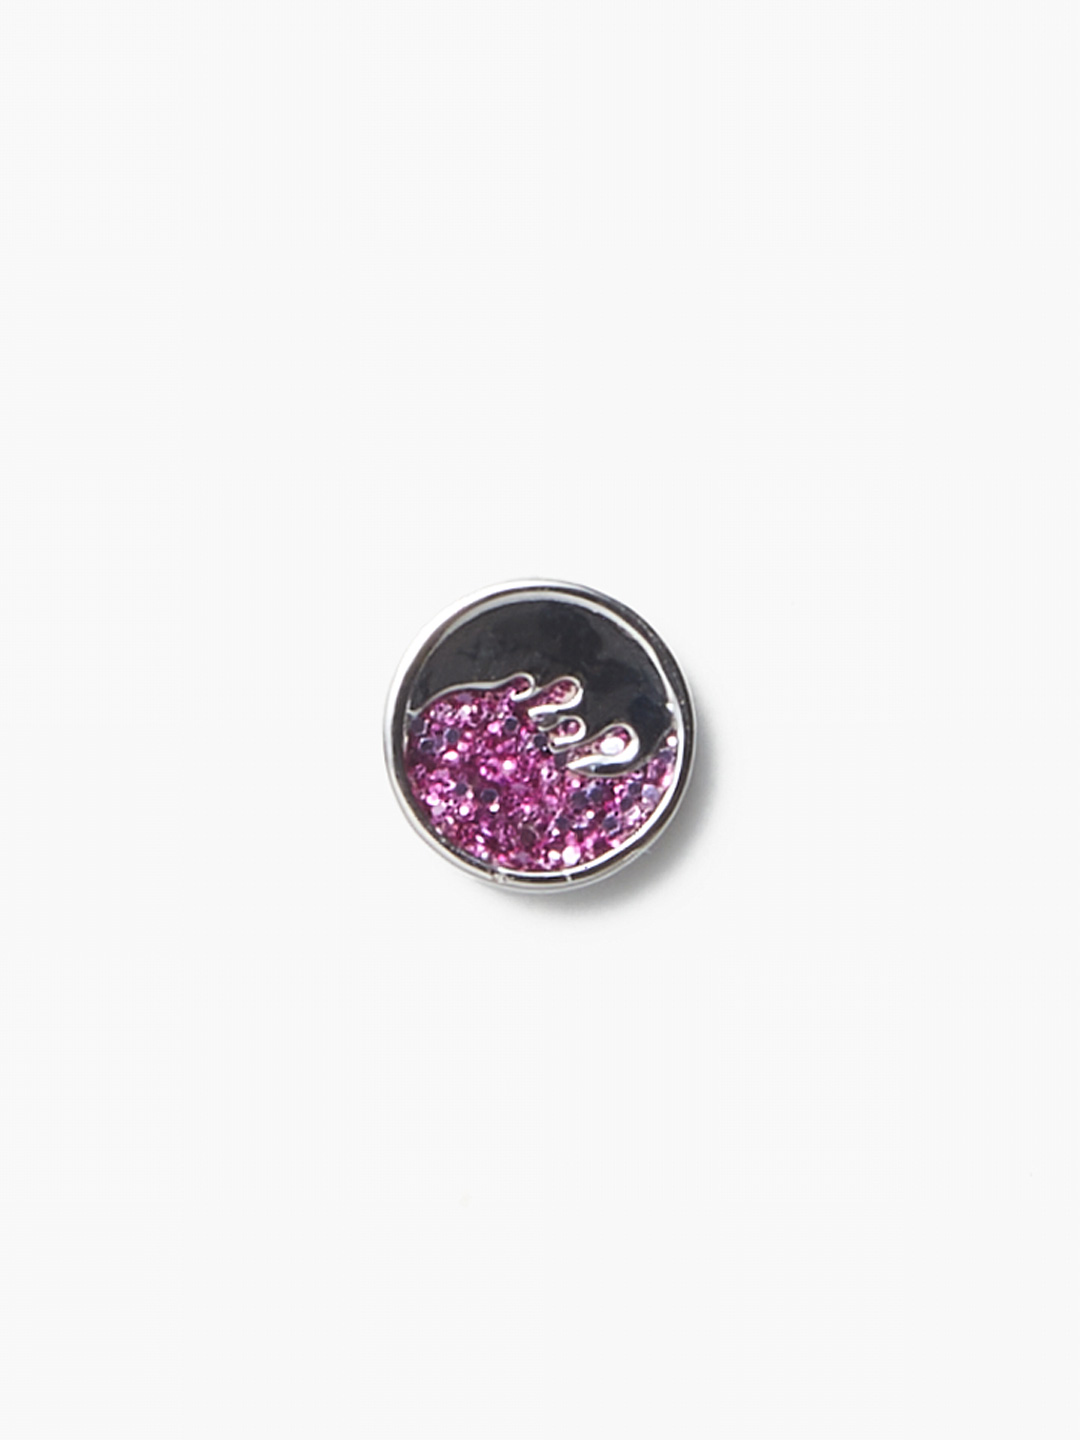 Detox Coin Lilac Glitter - Silver